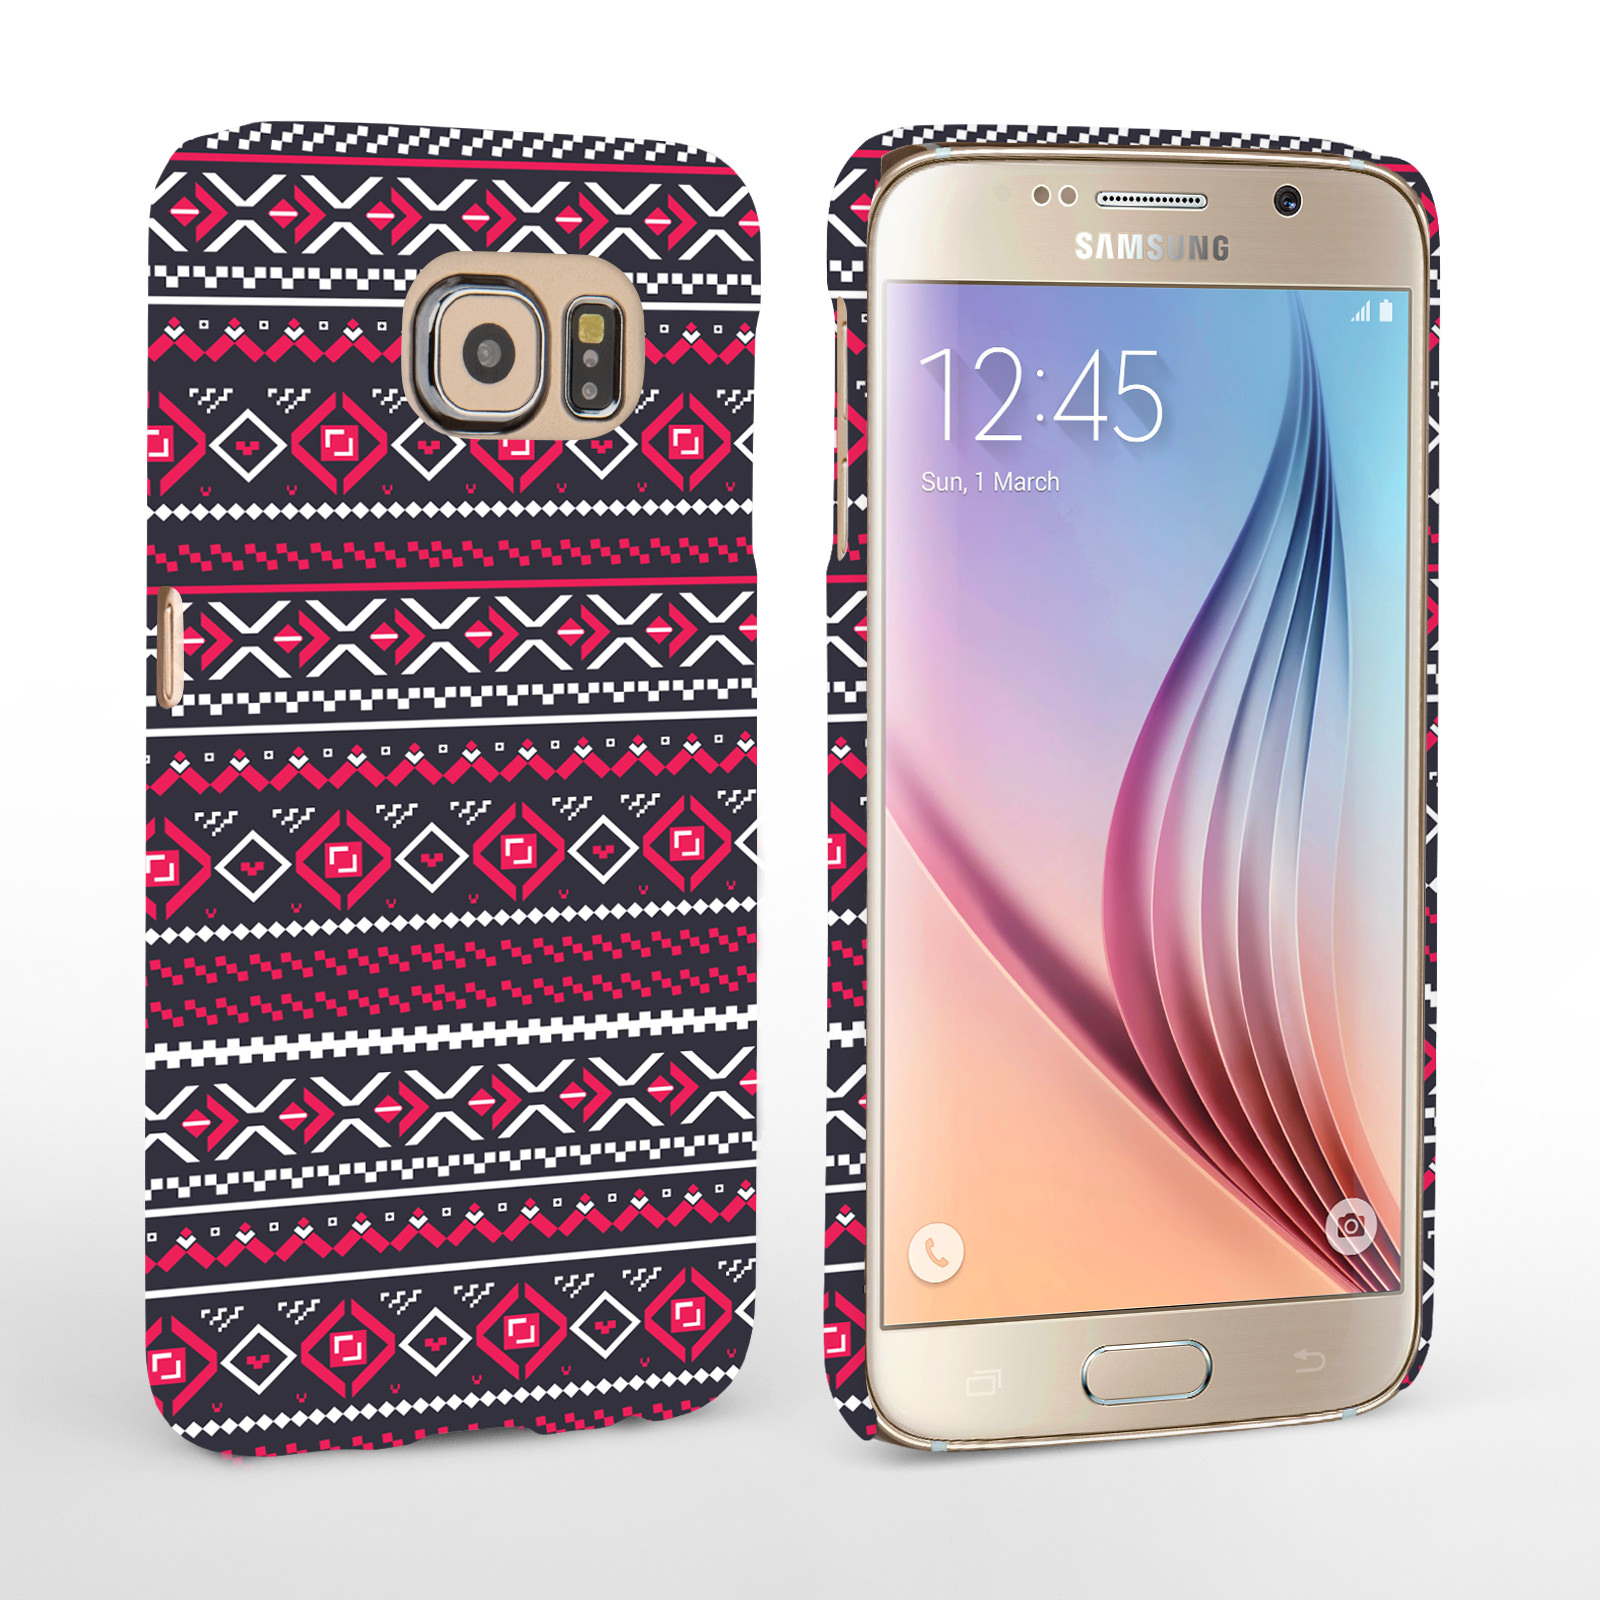 Caseflex Samsung Galaxy S6 Fairisle Case – Grey with Red Background